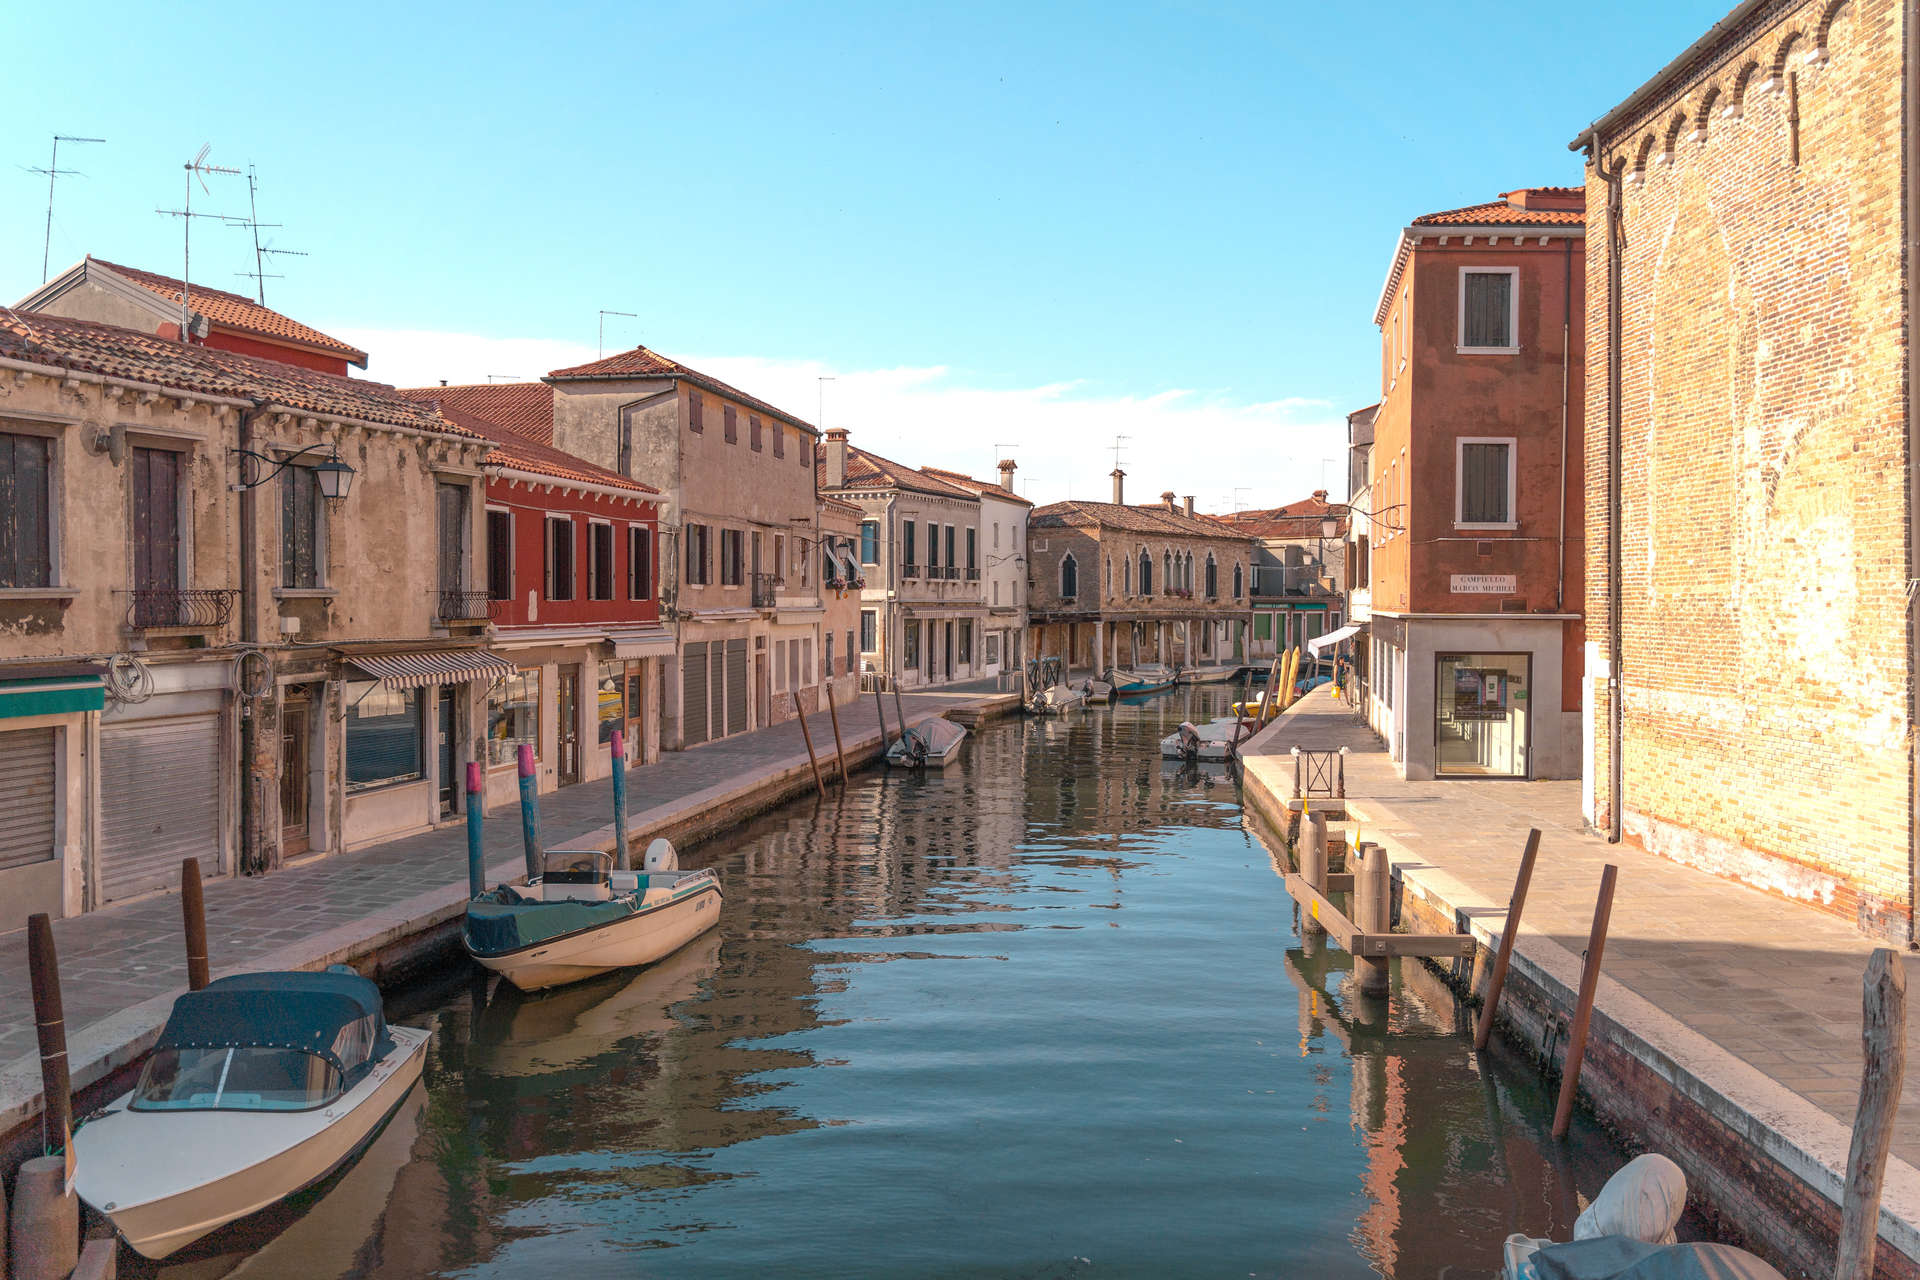 Canal of Fondamente dei Vetrai with boats, Murano, Venice